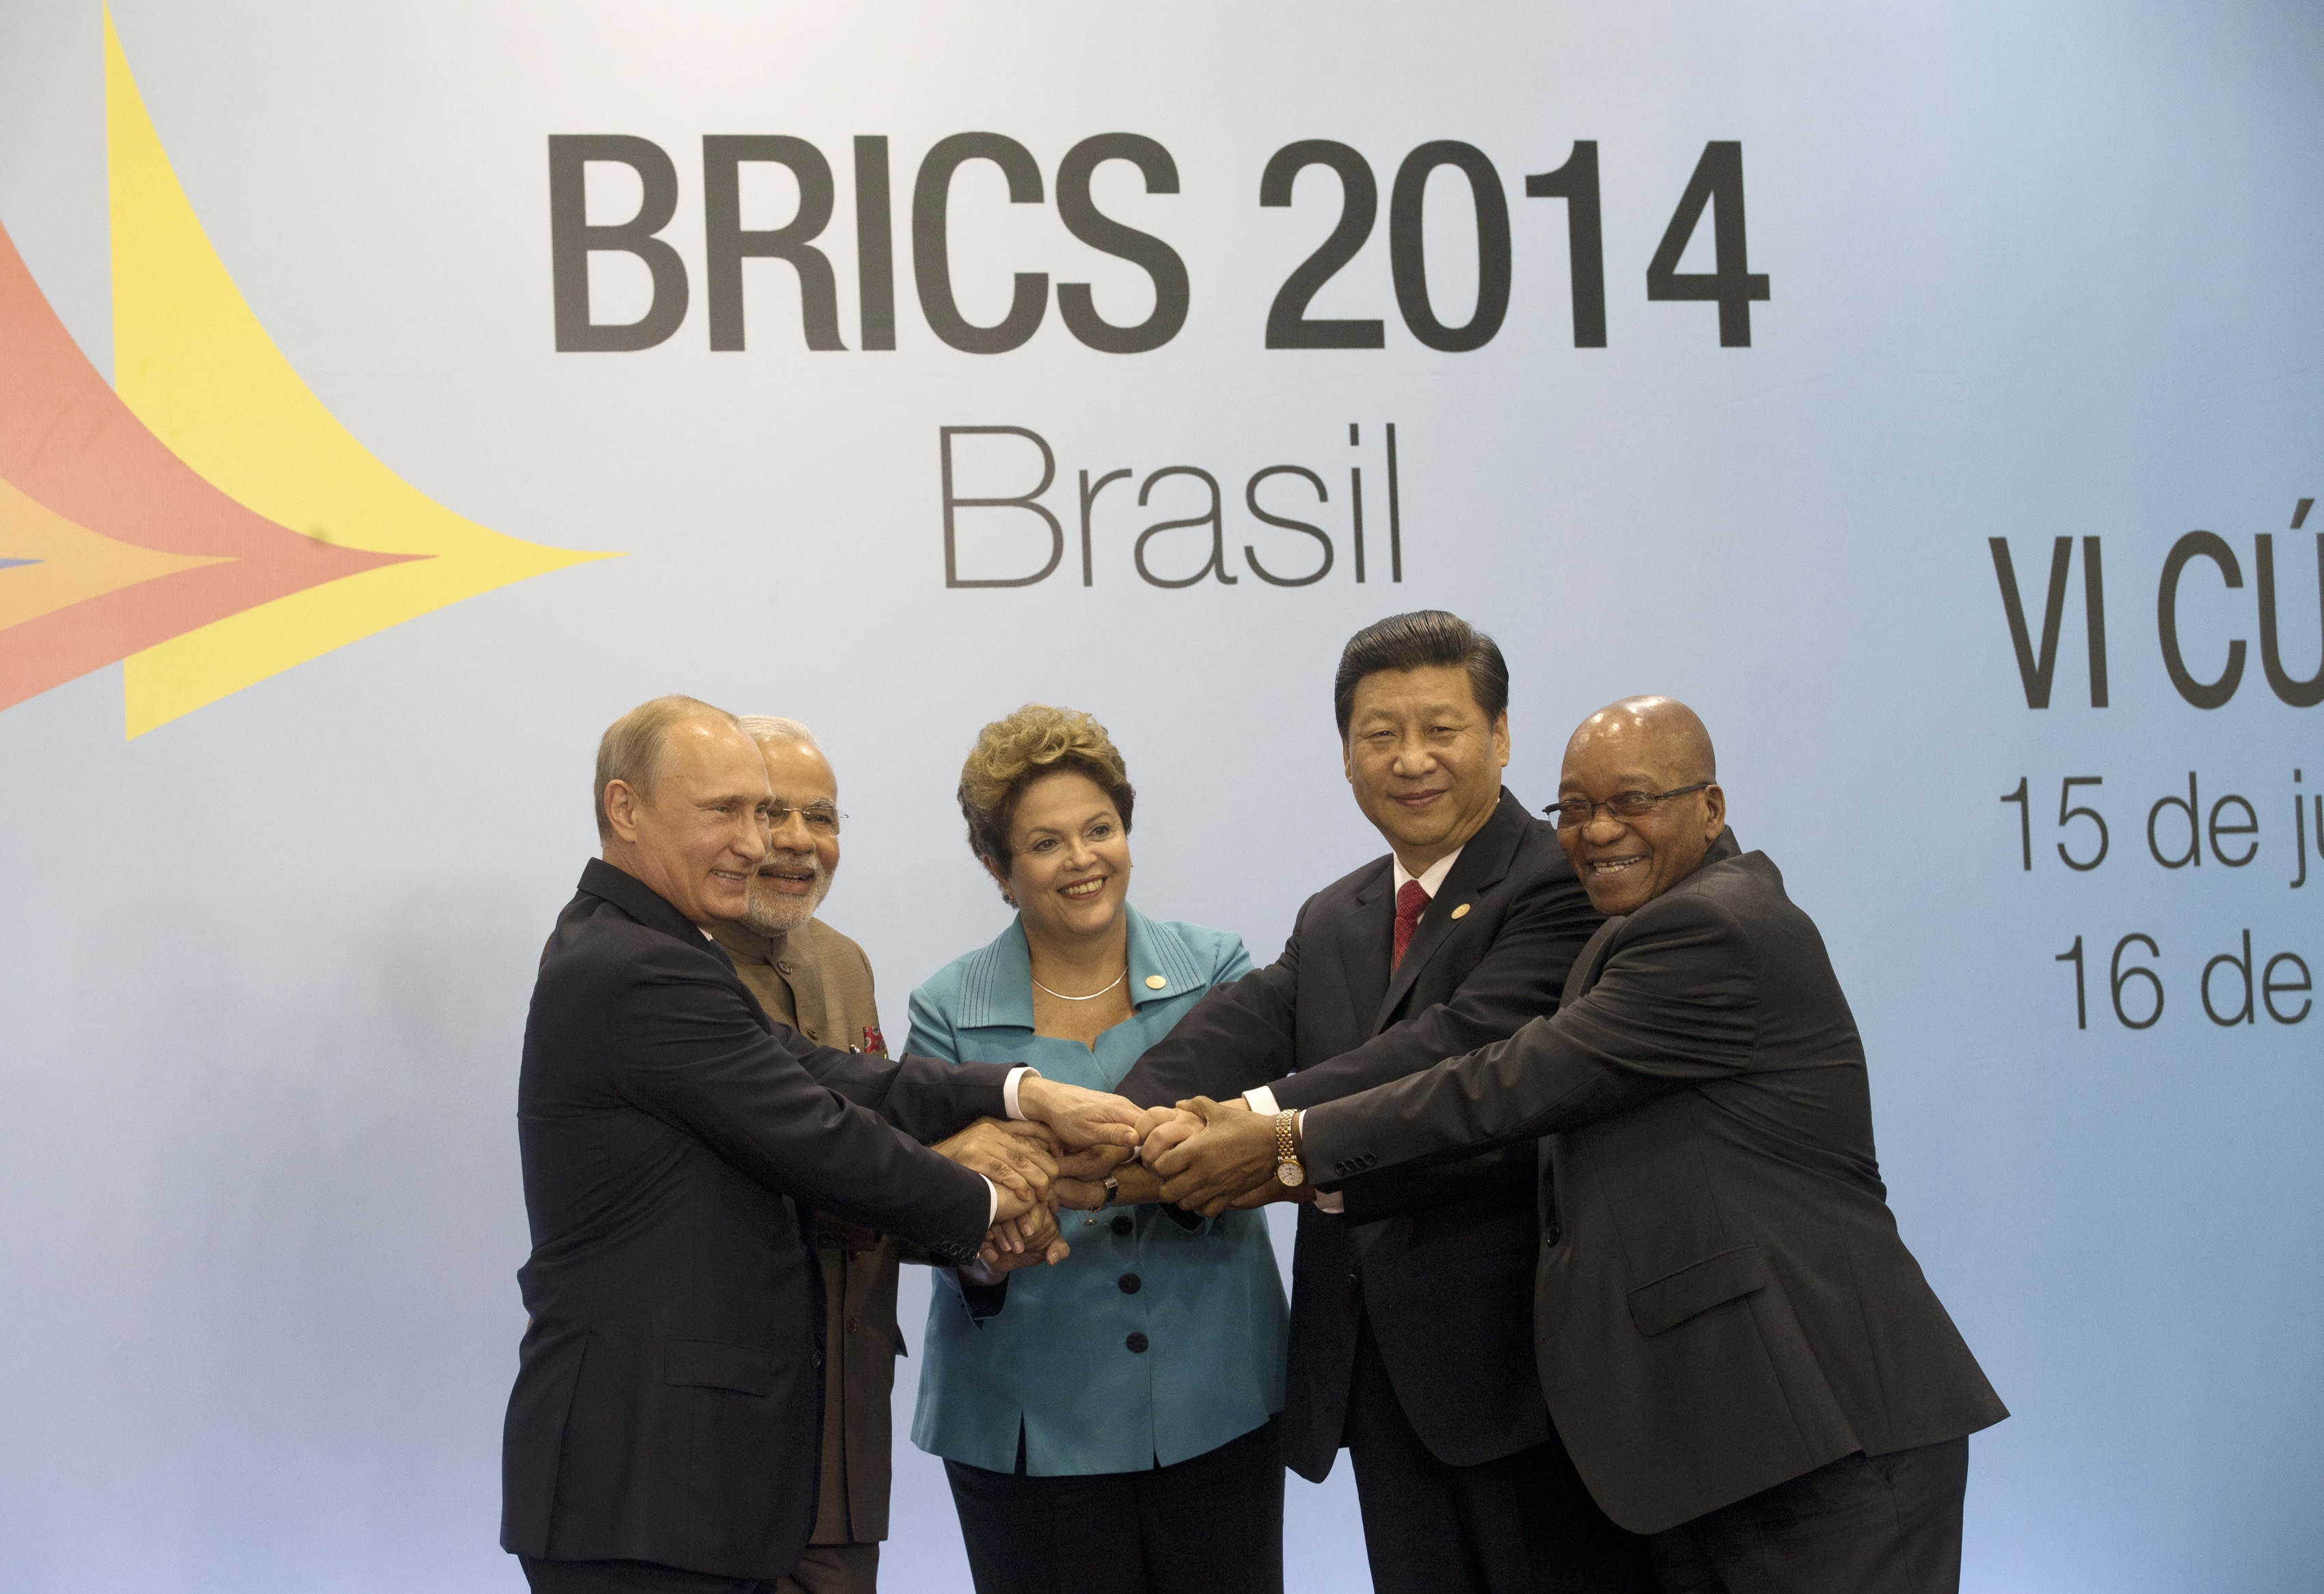 Auf dem BRICS-Gipfel im Juli wurde die Gründung einer neuen Entwicklungsbank angekündigt. Sie wird Entwicklungsfinanzierung machen, aber ob sie zur offiziellen Entwicklungshilfe beitragen wird, ist eine andere Frage.